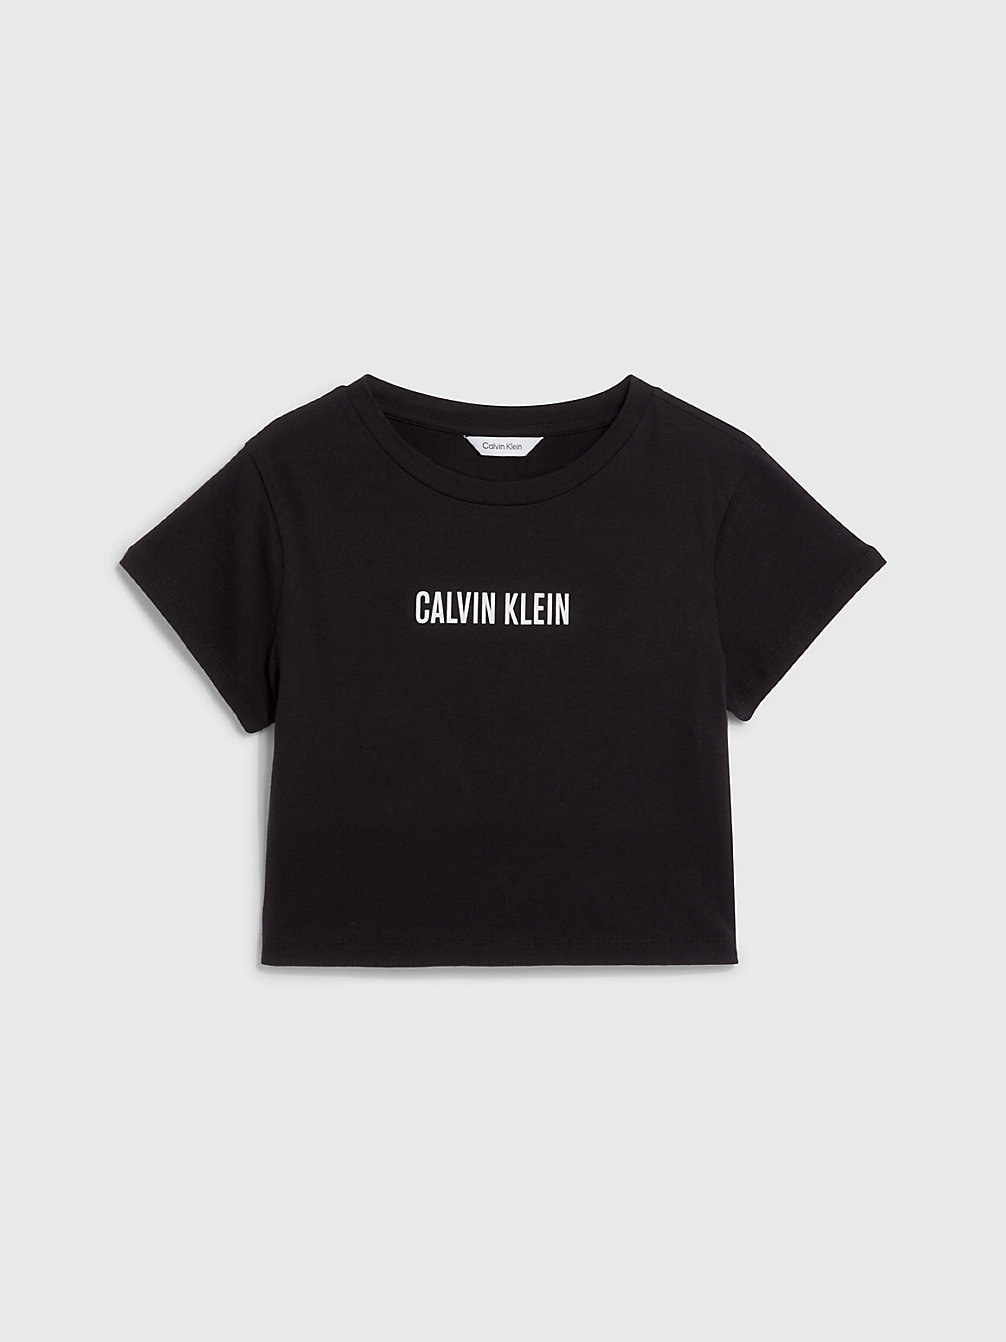 PVH BLACK T-Shirt De Plage Court Pour Fille - Intense Power undefined filles Calvin Klein